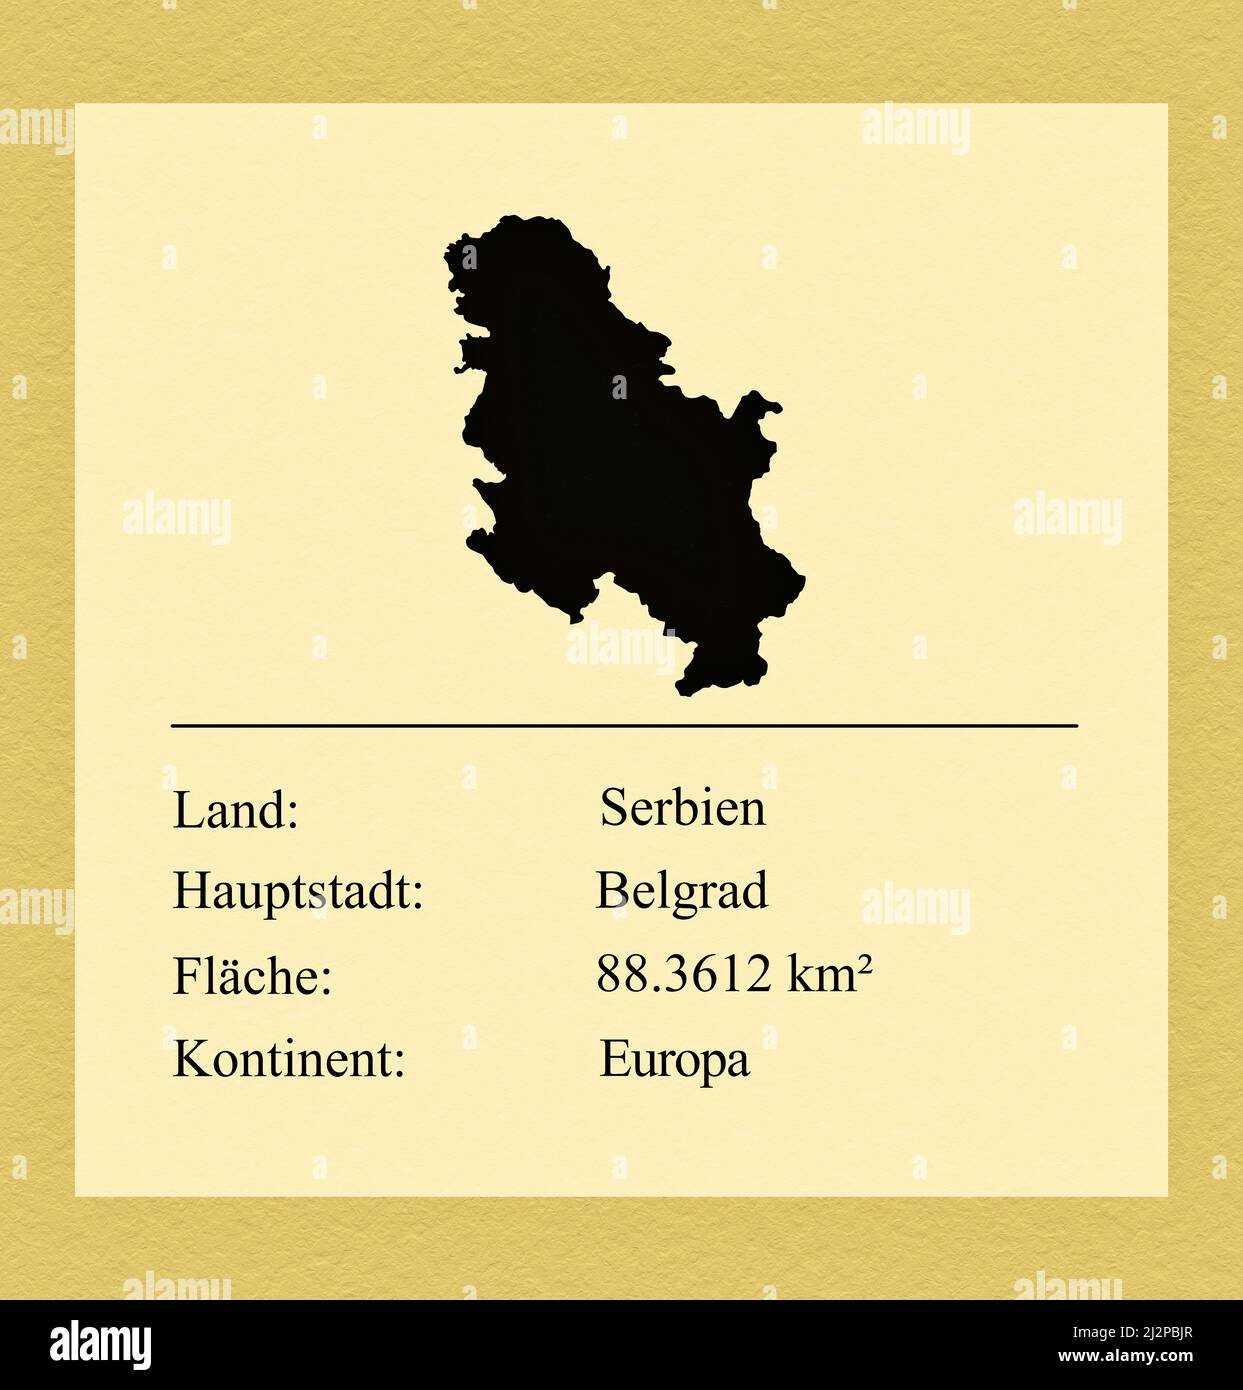 Umrisse des Landes Serbien, darunter ein kleiner Steckbrief mit Ländernamen, Hauptstadt, Fläche und Kontinent Foto de stock